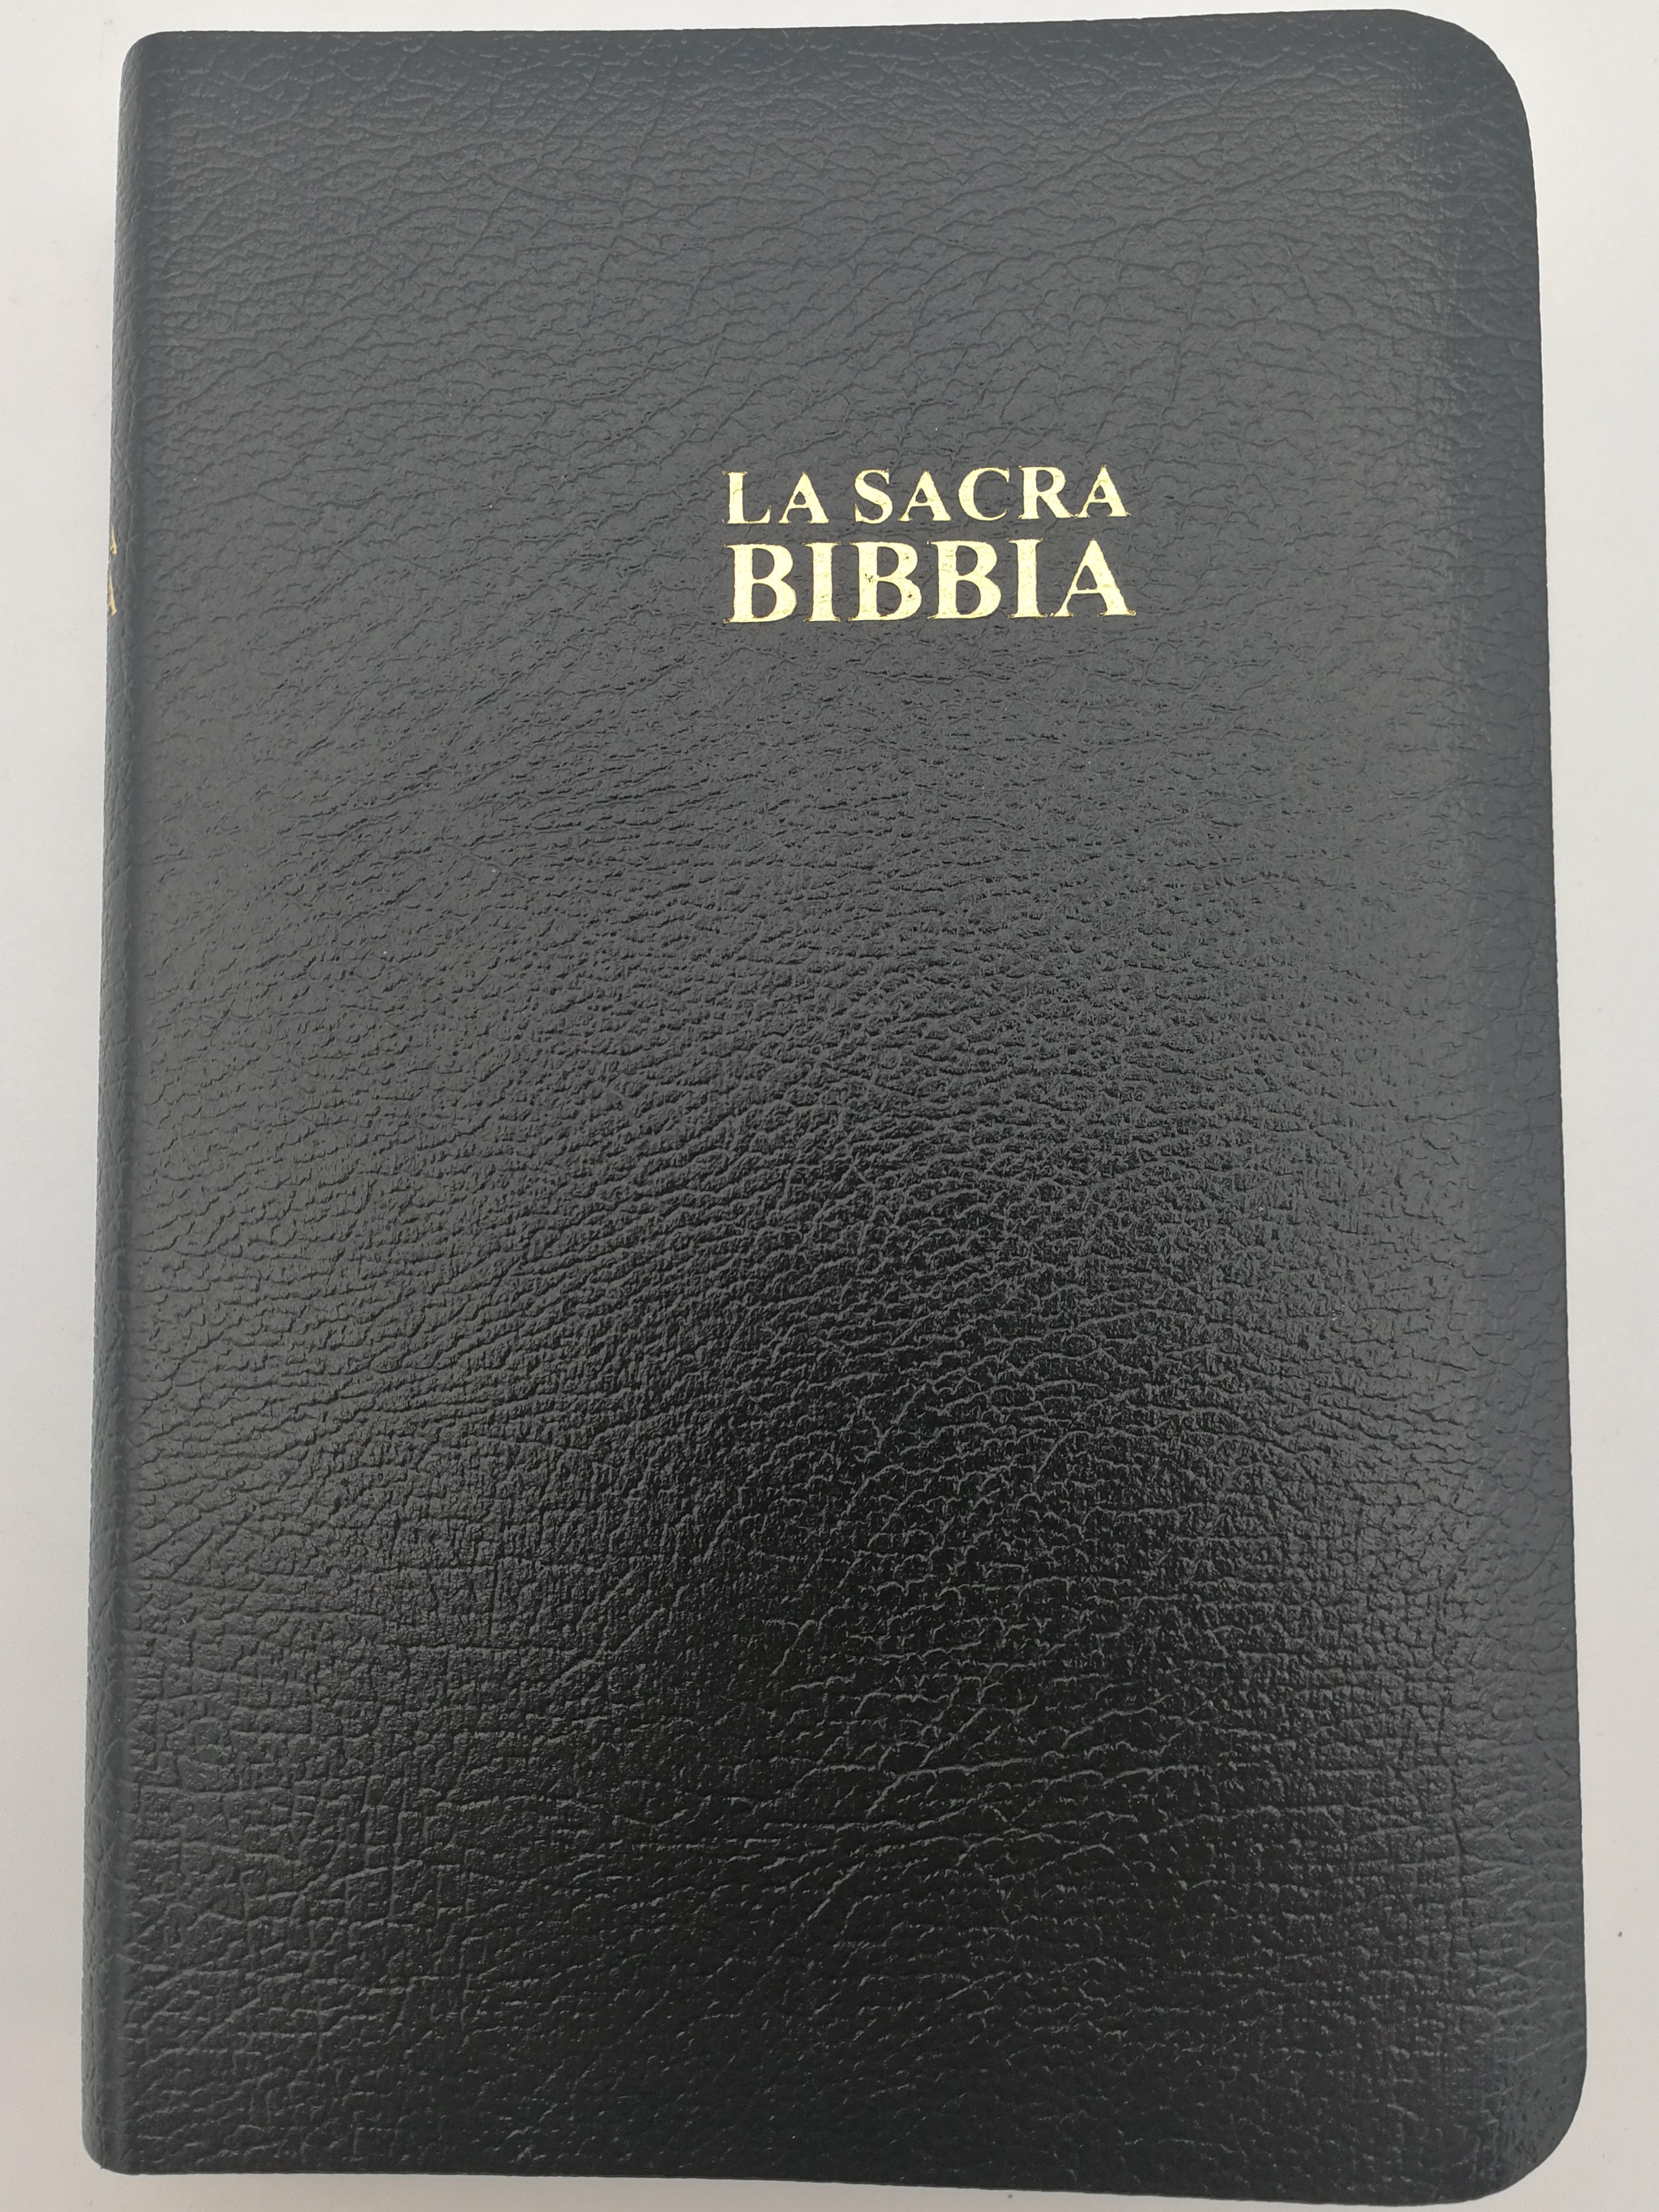 Italian Holy Bible 1991 Revised version - Black leatherbound - Gold edges /  La Sacra Bibbia - La Nuova Diodati - Revisione 1991-03 / La Buona Novella  2008 / C03PN - Bible in My Language